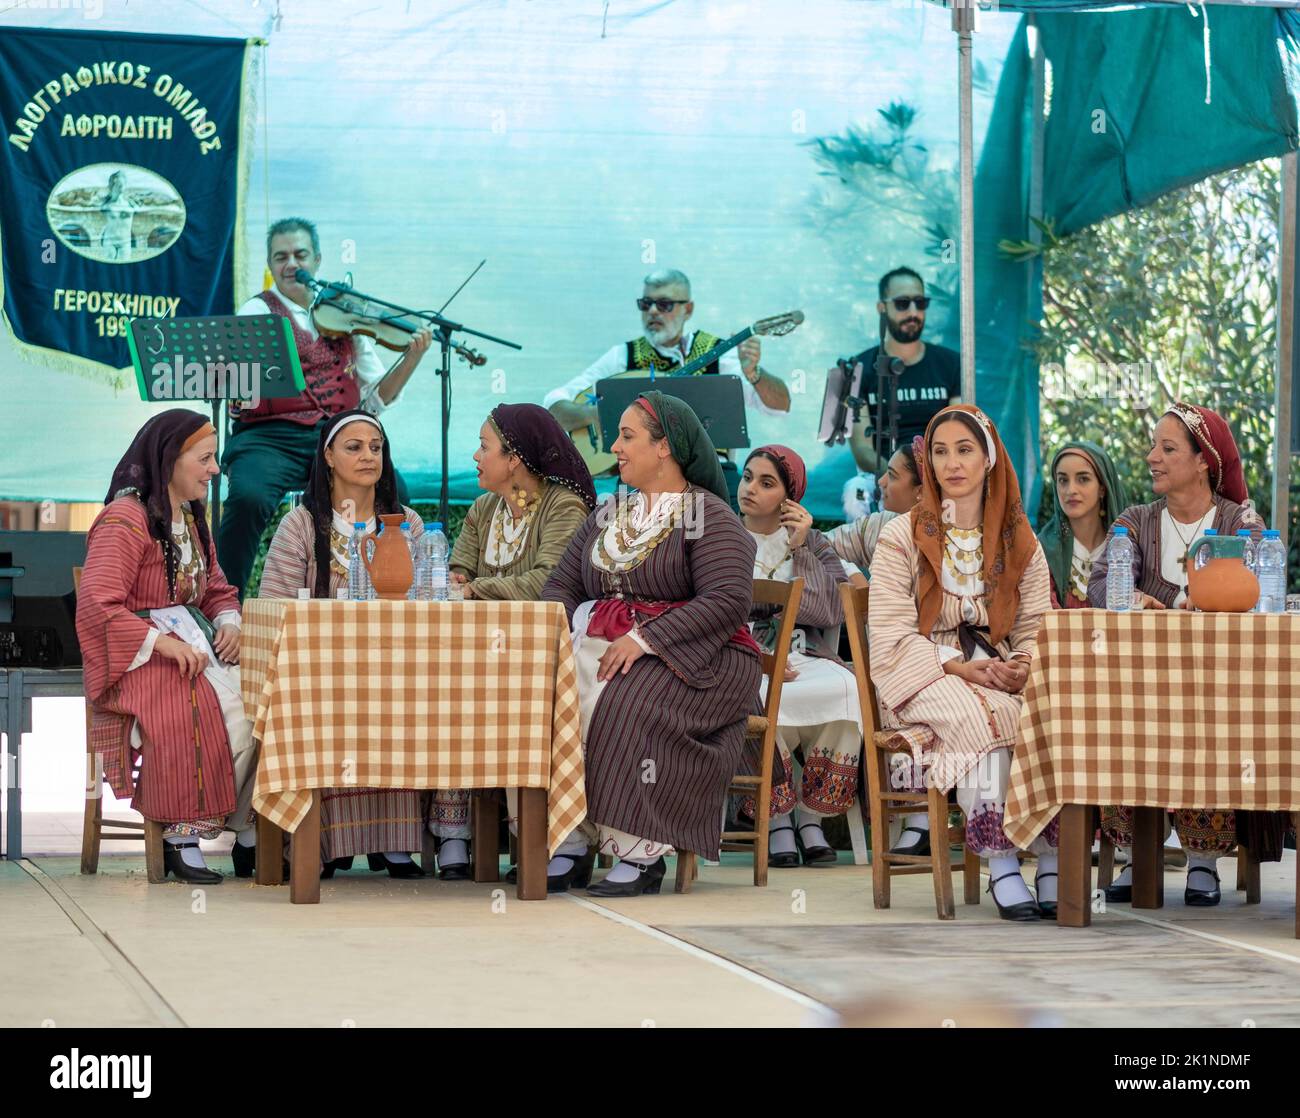 Les Cypriotes en costume traditionnel regardent des artistes au Festival rural Statos-Agios Fotios, région de Paphos, Chypre. Banque D'Images